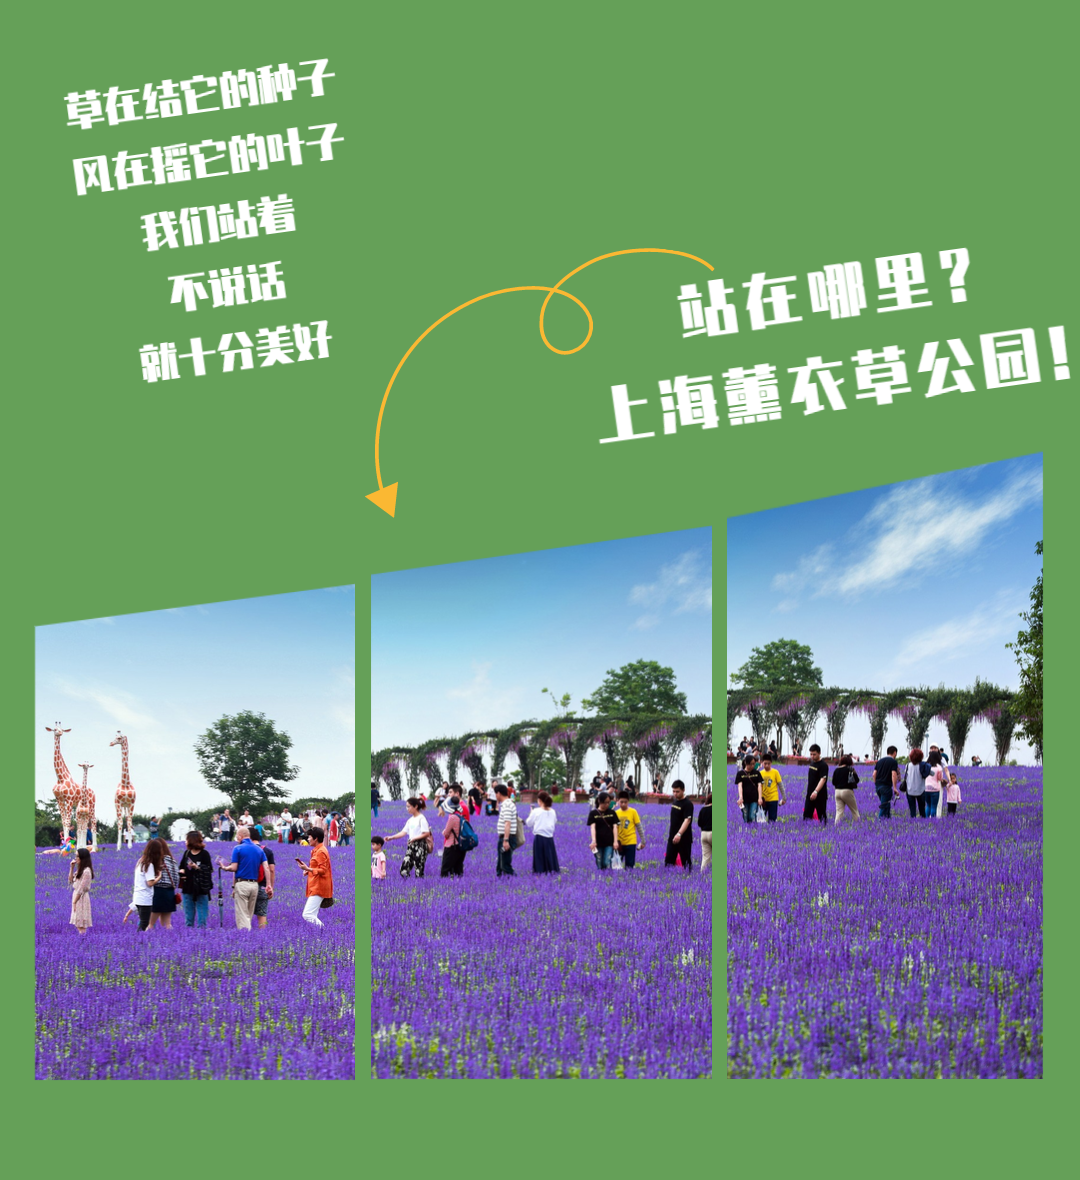 【上海薰衣草公园】 29元抢购平日单人门票！ 2020，上海薰衣草节要给你 360°的“春日体验”（5月16-6月30） ，不必远赴普罗旺斯，也能看见紫色的花海！在100亩梅丽雅特薰衣草花田里、在100000株不同品种的玫瑰花丛中、在20000㎡超大空间的休闲草坪上，畅快呼吸！